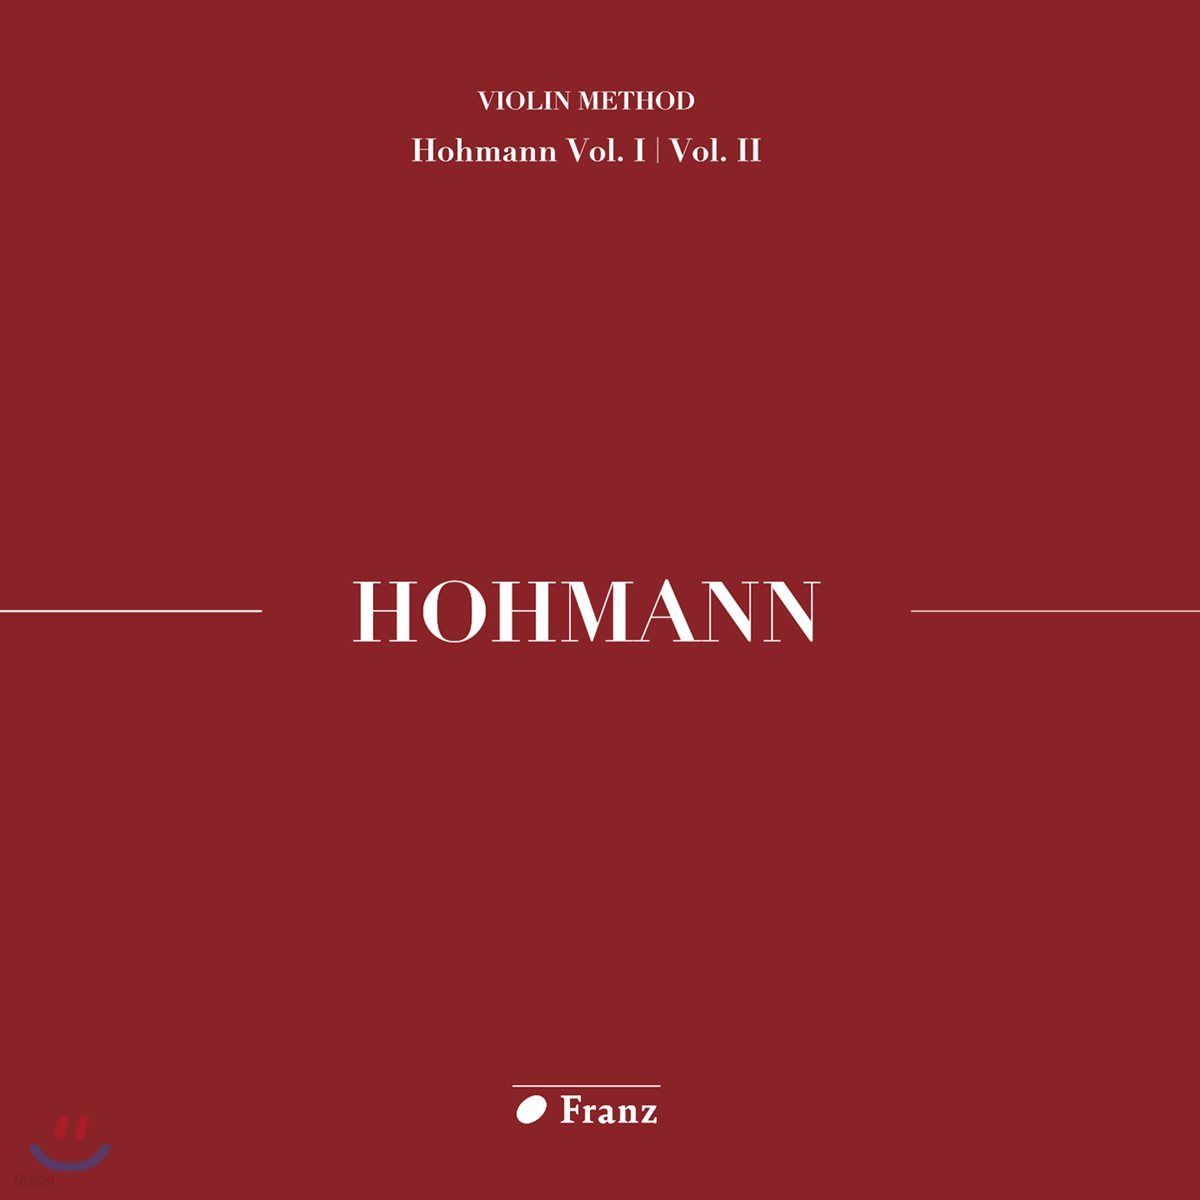 김수현 - 크리스티안 하인리히 호만: 바이올린 교본 1, 2권 연주집 (Christian Heinrich Hohmann: Violin Method Homann Vol.I / Vol. II)